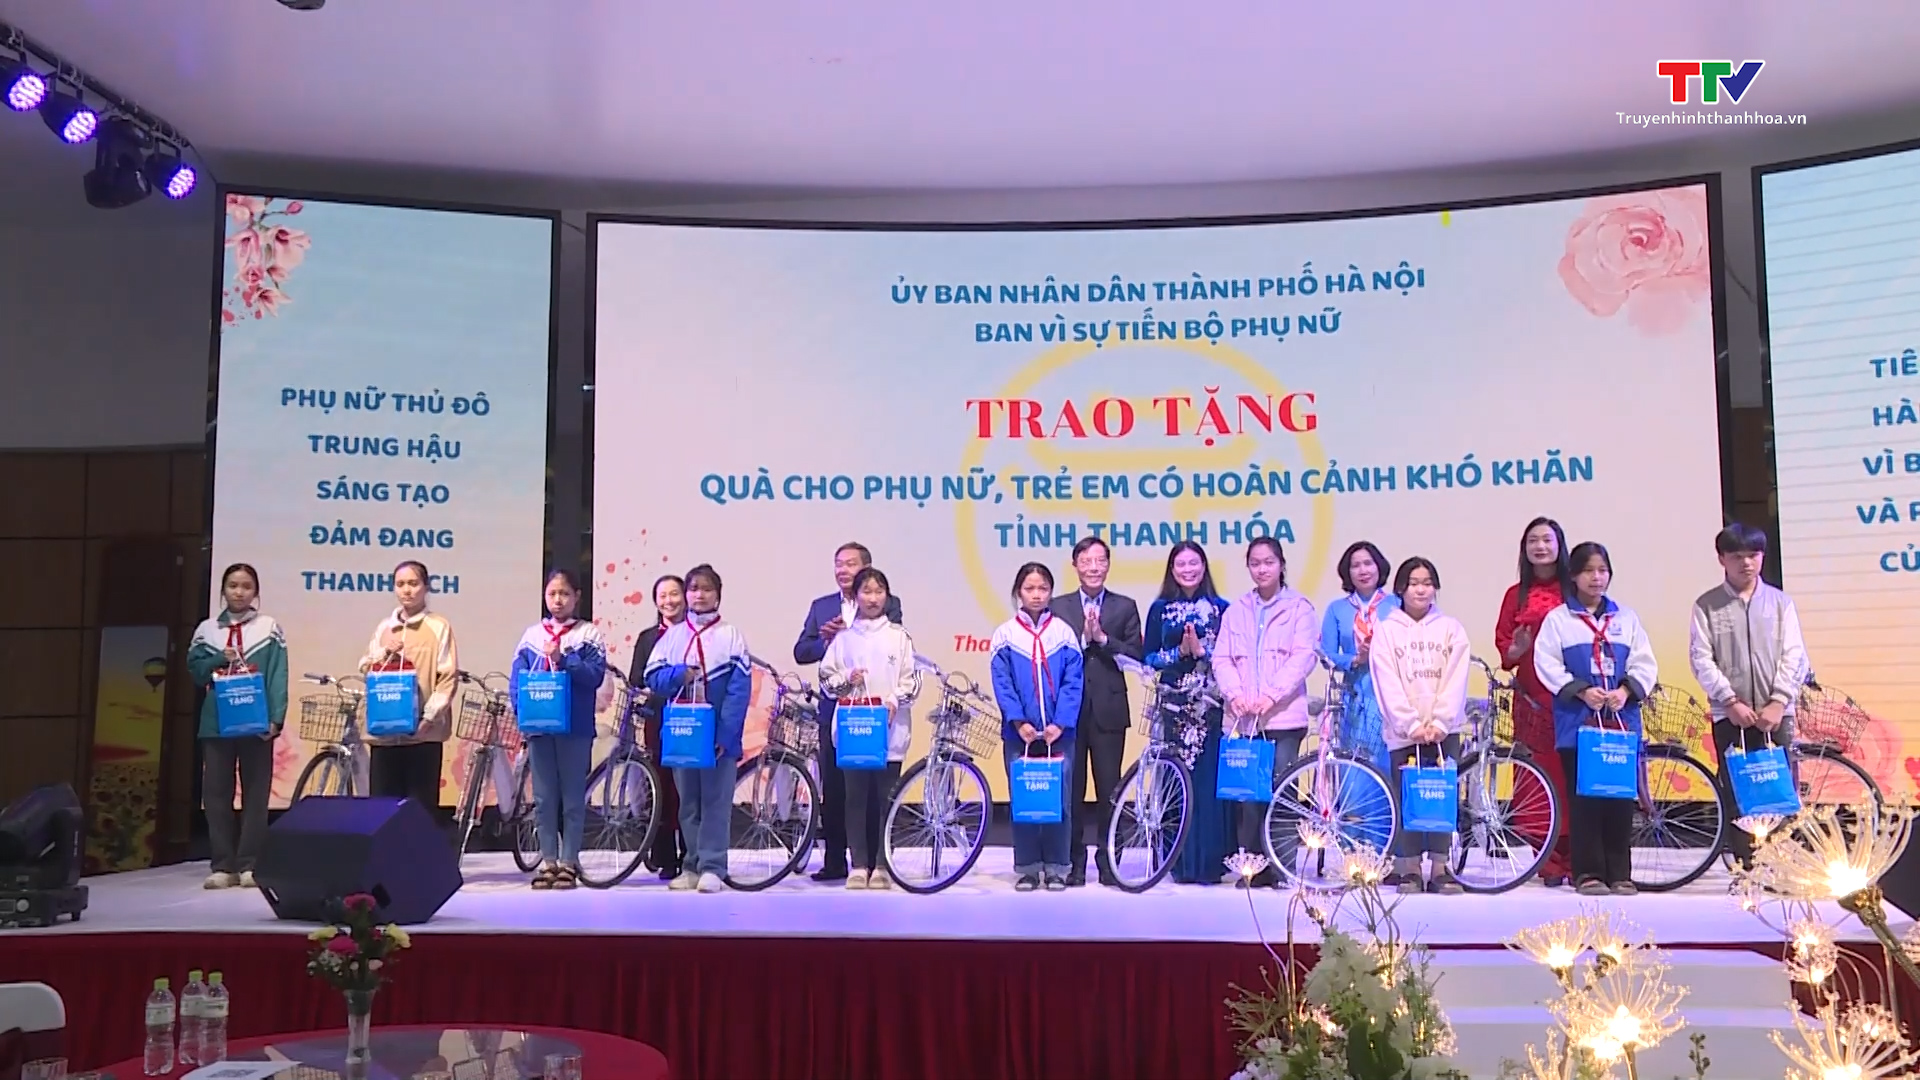 Ban vì sự tiến bộ phụ nữ thành phố Hà Nội và tỉnh Thanh Hóa triển khai công tác bình đẳng giới, vì sự tiến bộ phụ nữ- Ảnh 4.